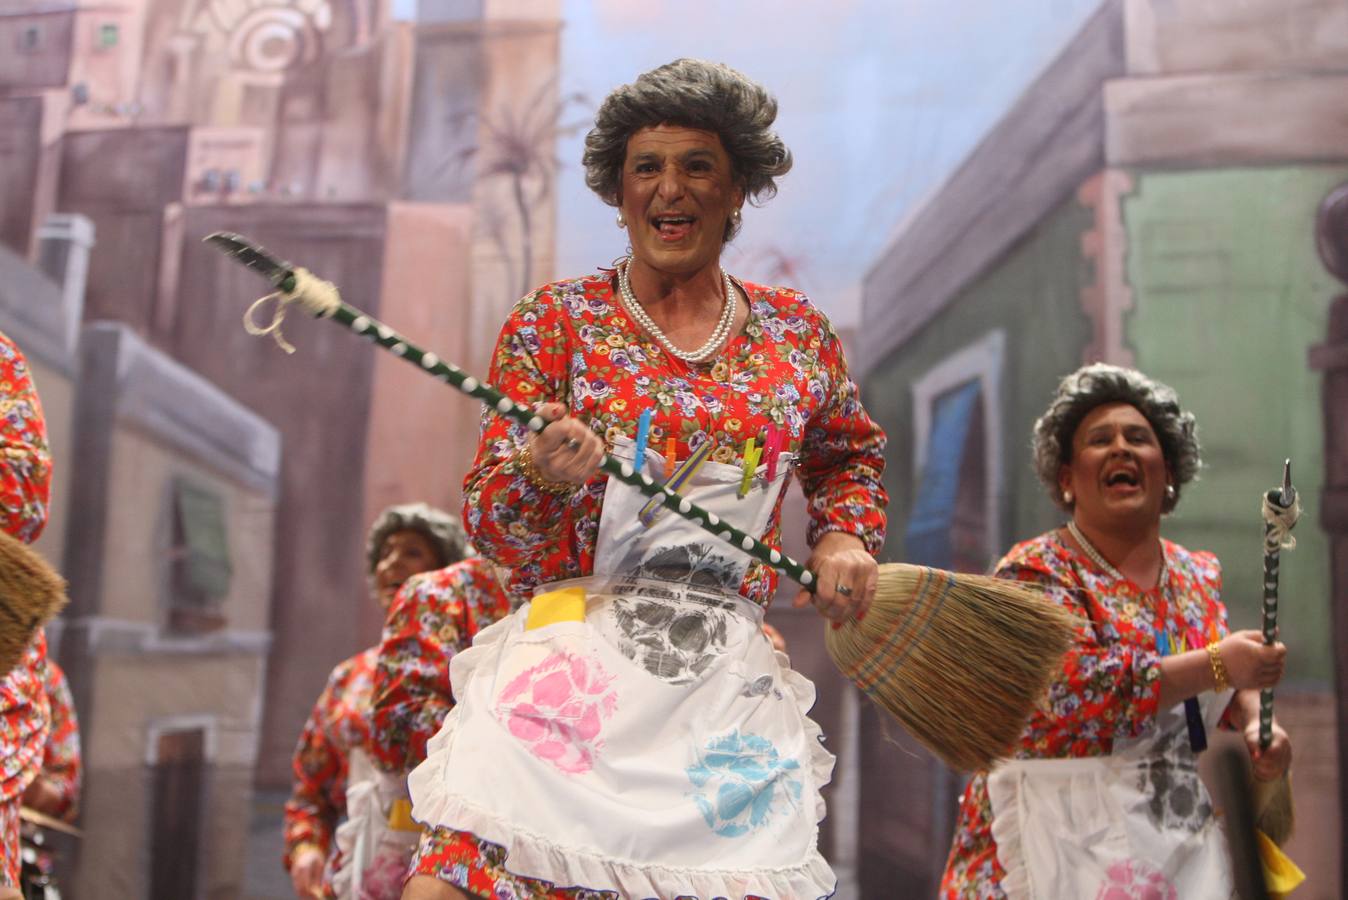 FOTOS: Chirigota Los pinchapelotas en el Carnaval de Cádiz 2018